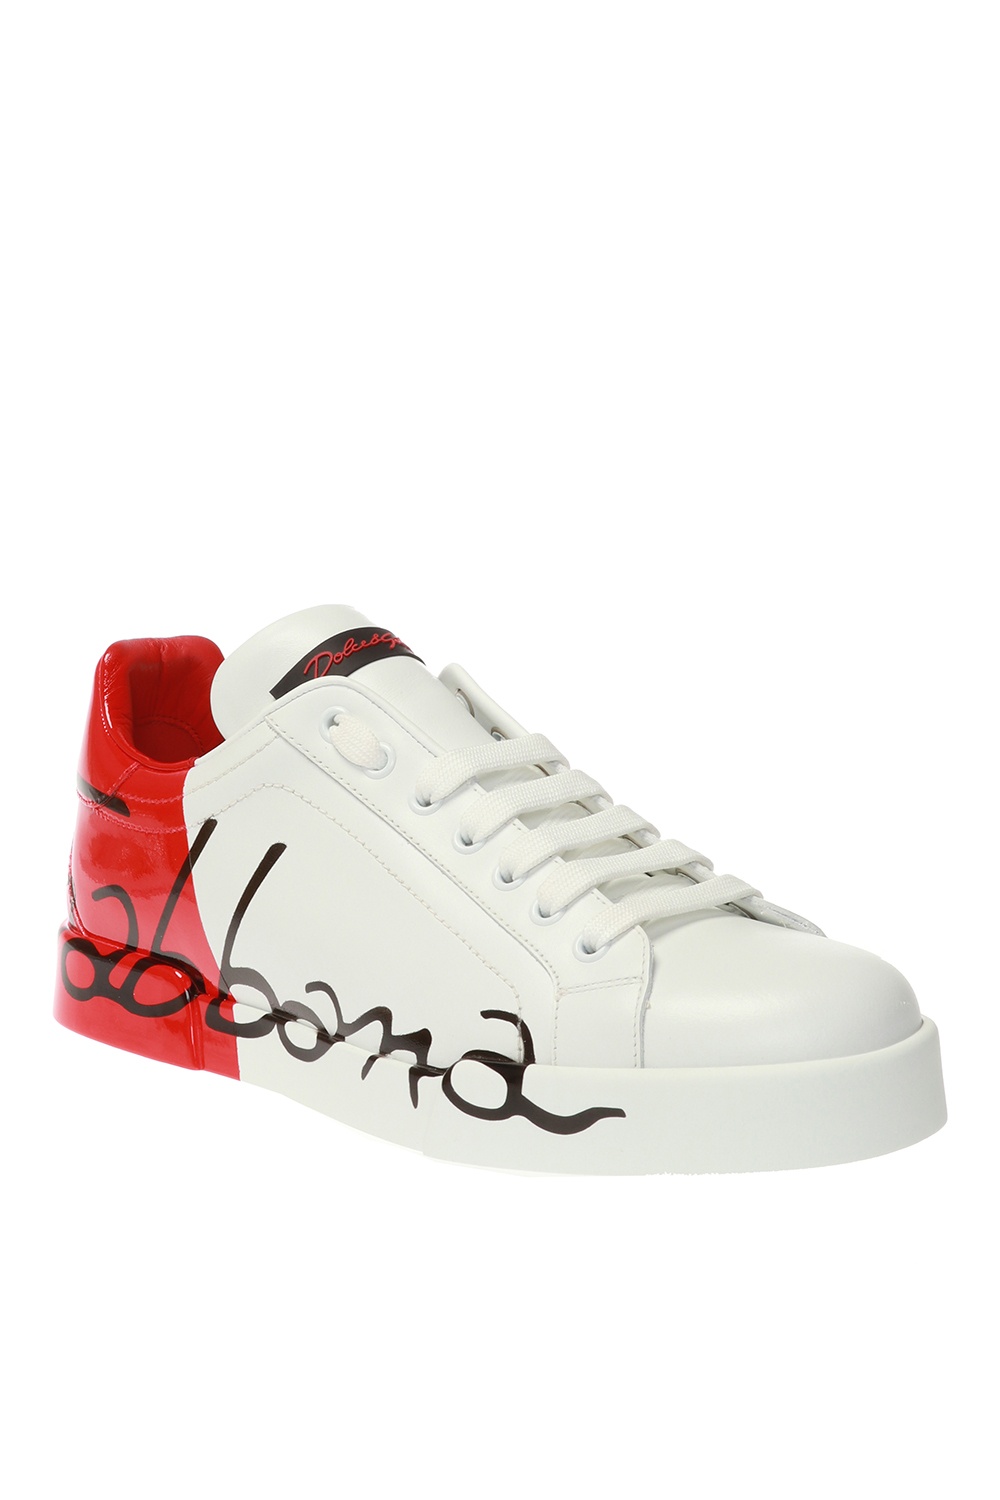 dolce & gabbana white red portofino sneakers